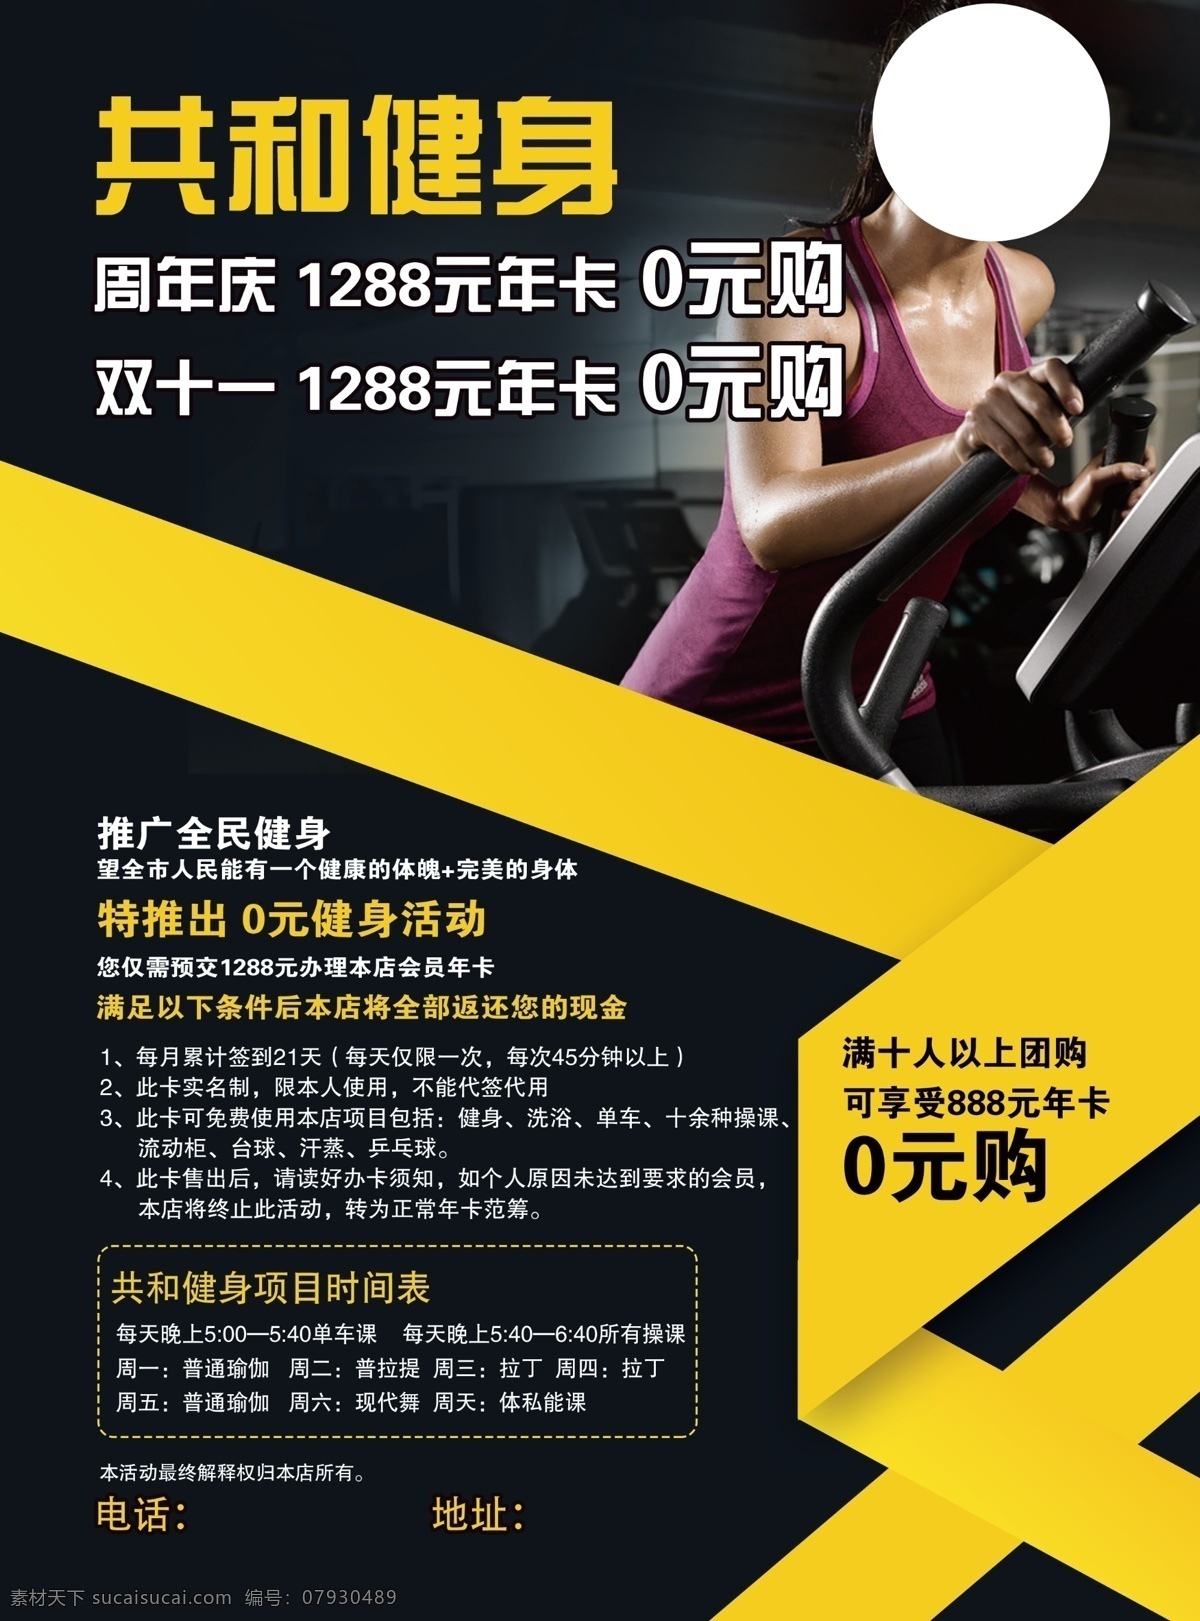 健身传单图片 健身传单 健身广告宣传 健身房海报 黑色背景 海报